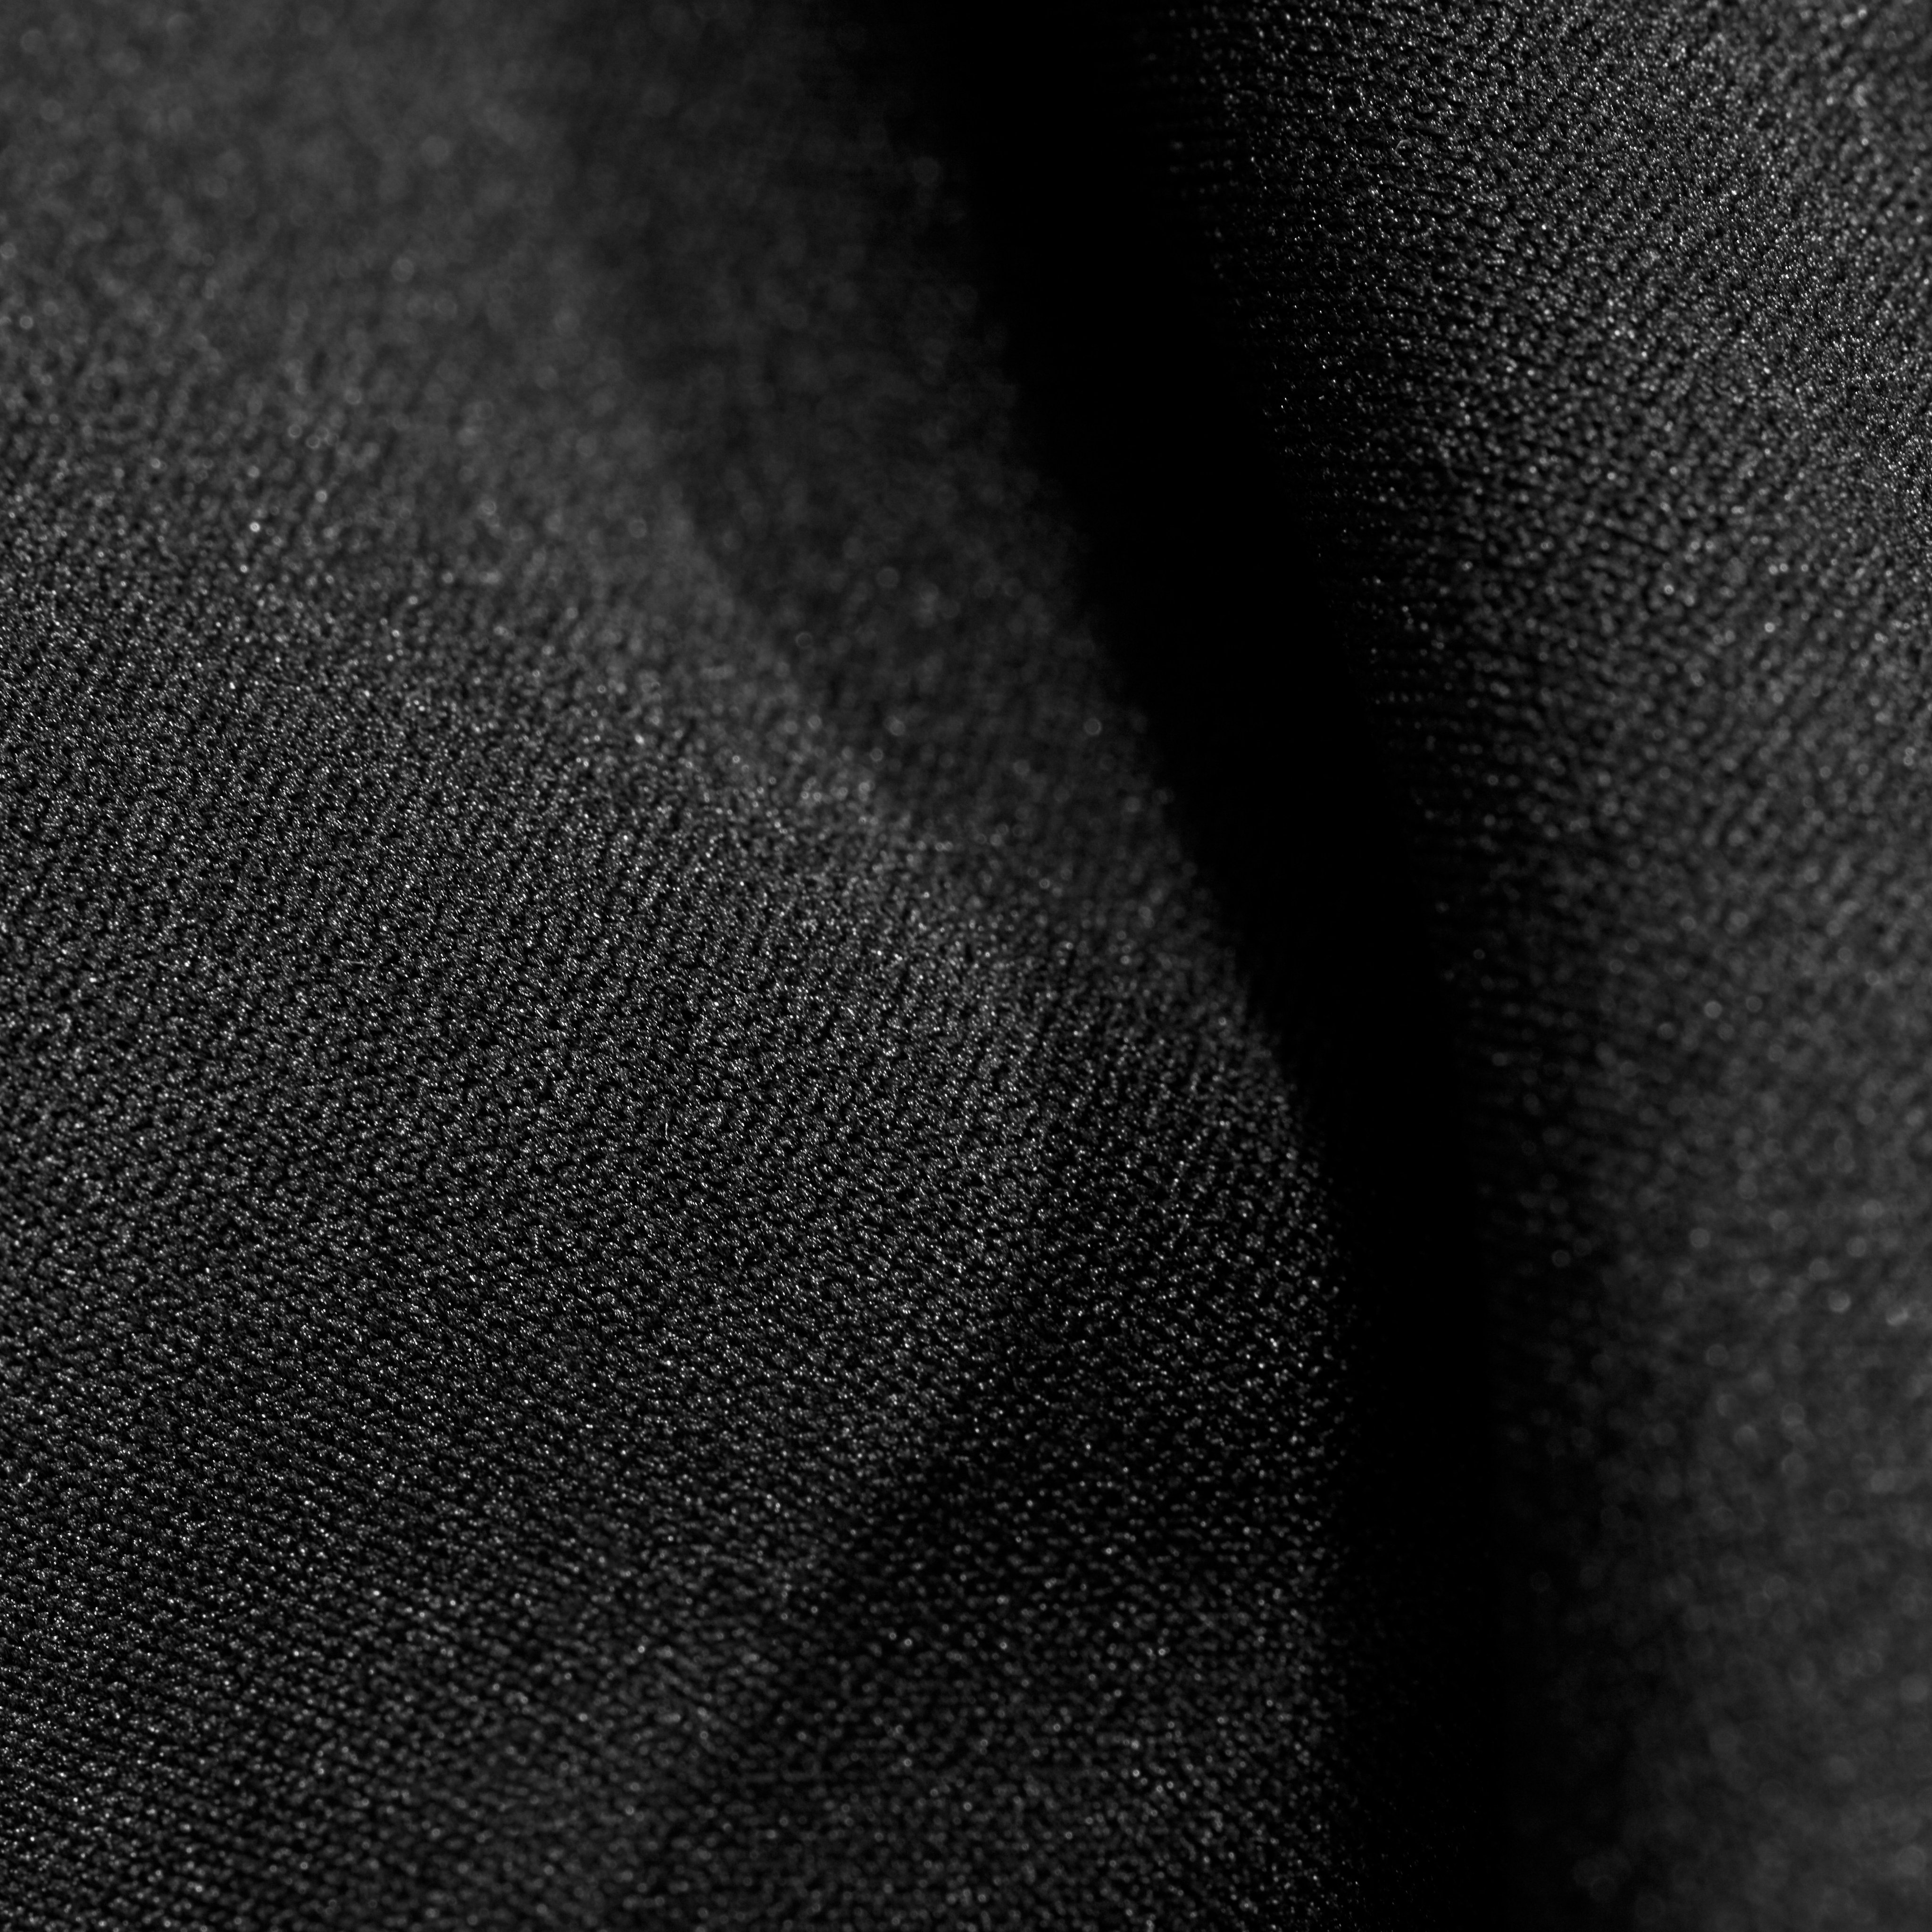 Albula IN Hybrid Jacket Men product image